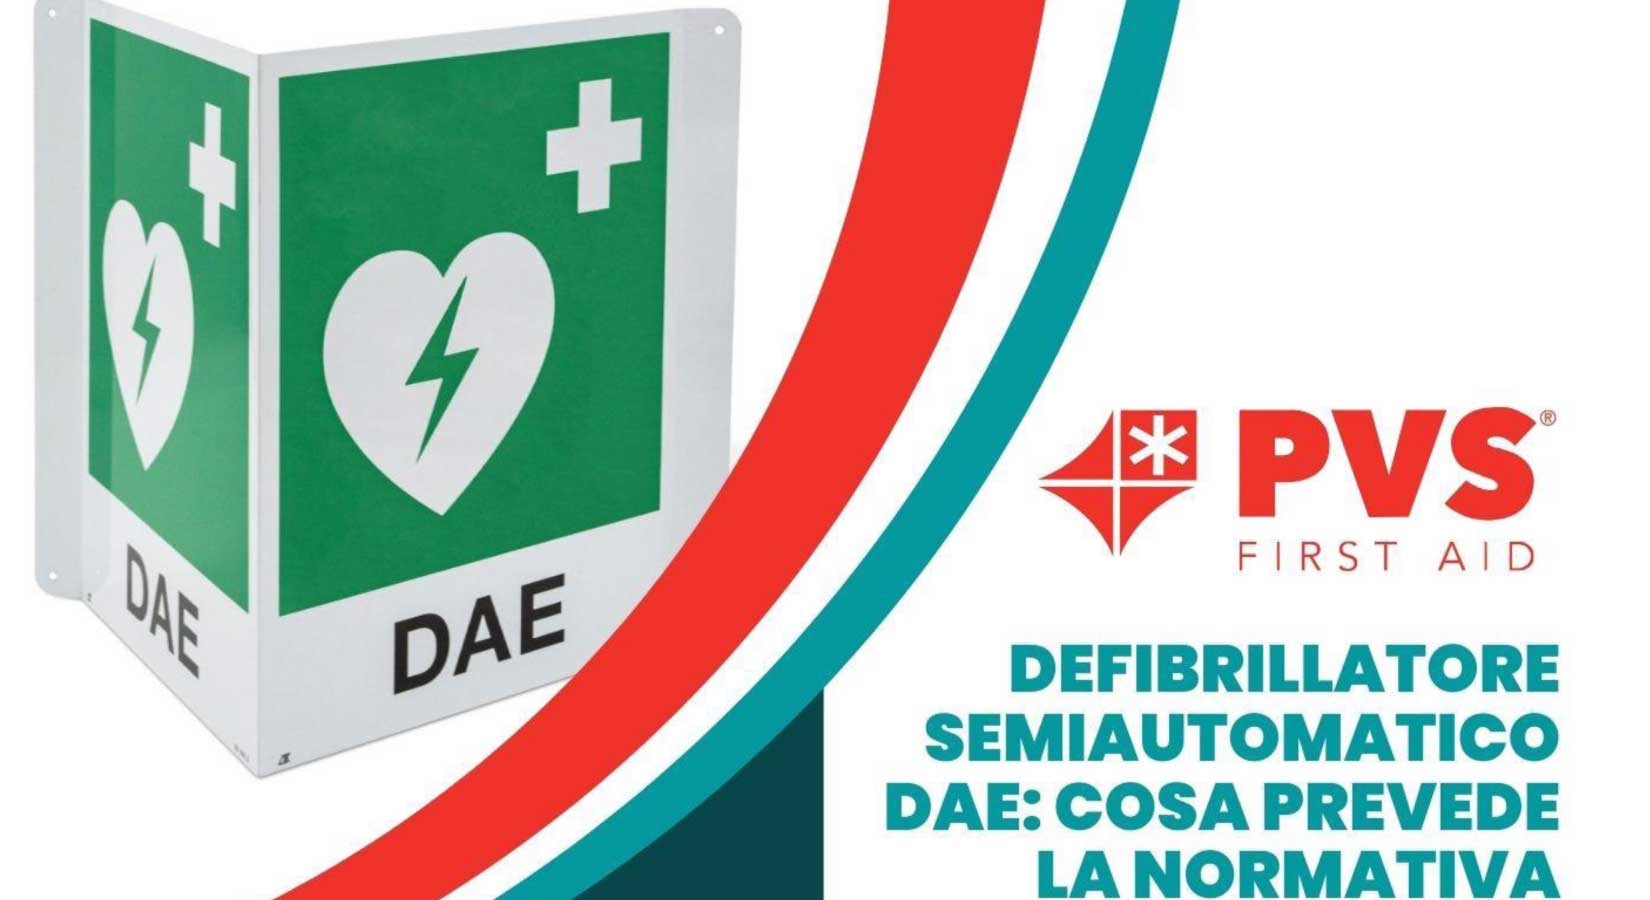 DAE: defibrillatore semiautomatico